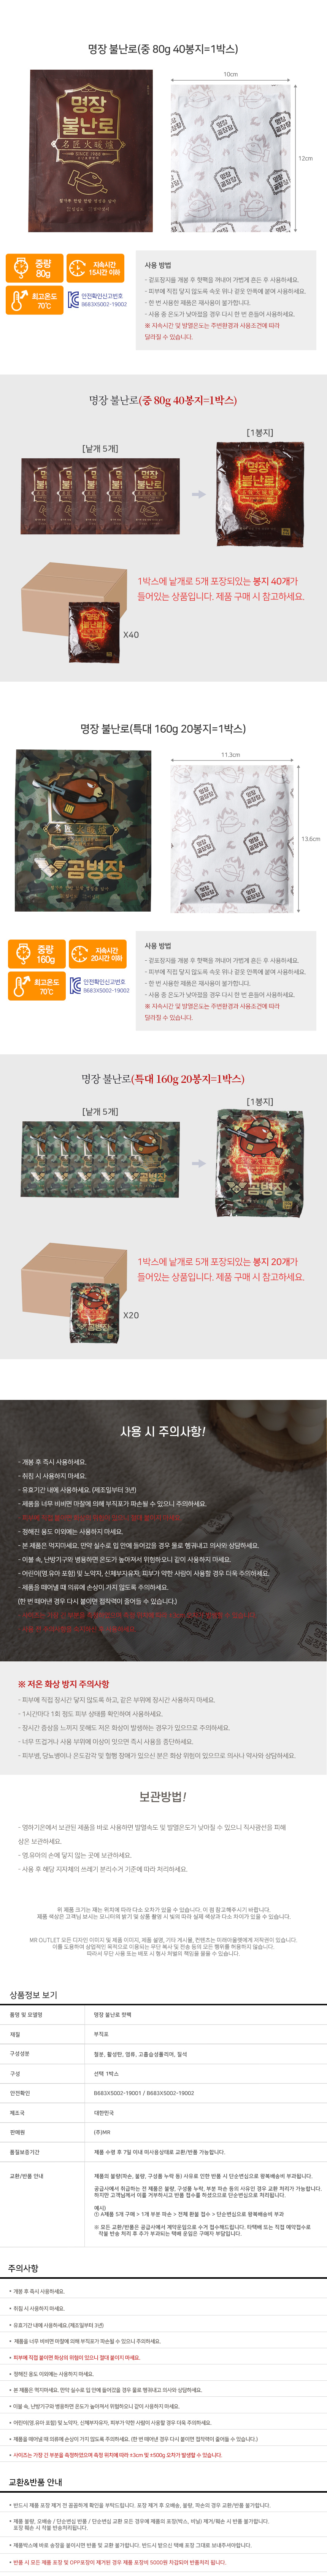 Myeongjang_hotpackbox_04.jpg